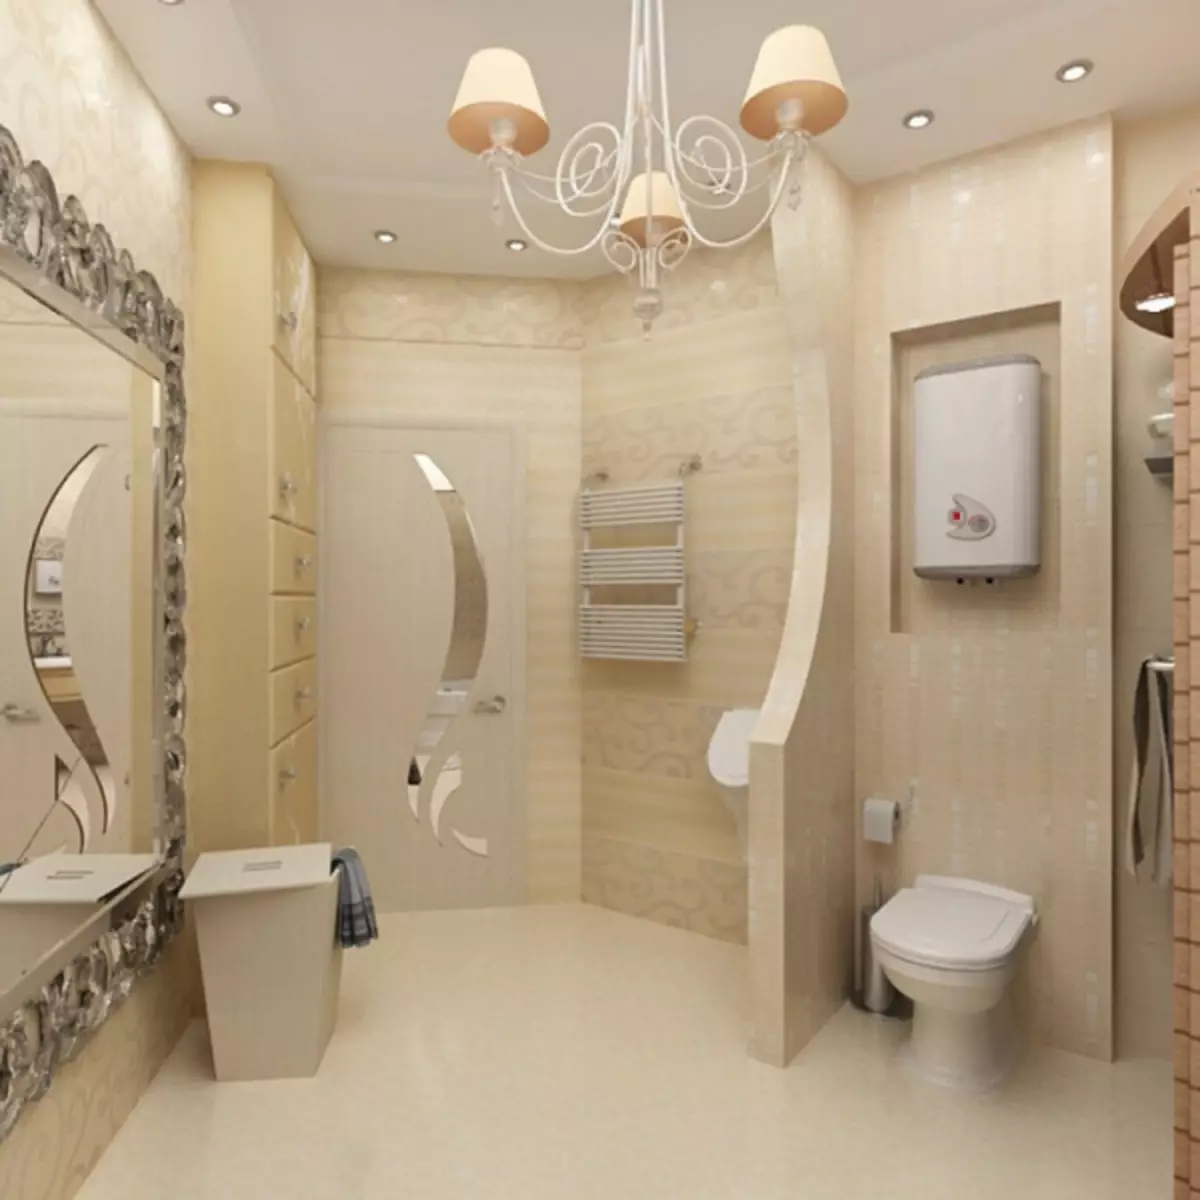 トイレと組み合わせたバスルームのインテリア：小さなスペースで美しく実用的な方法（38枚の写真）